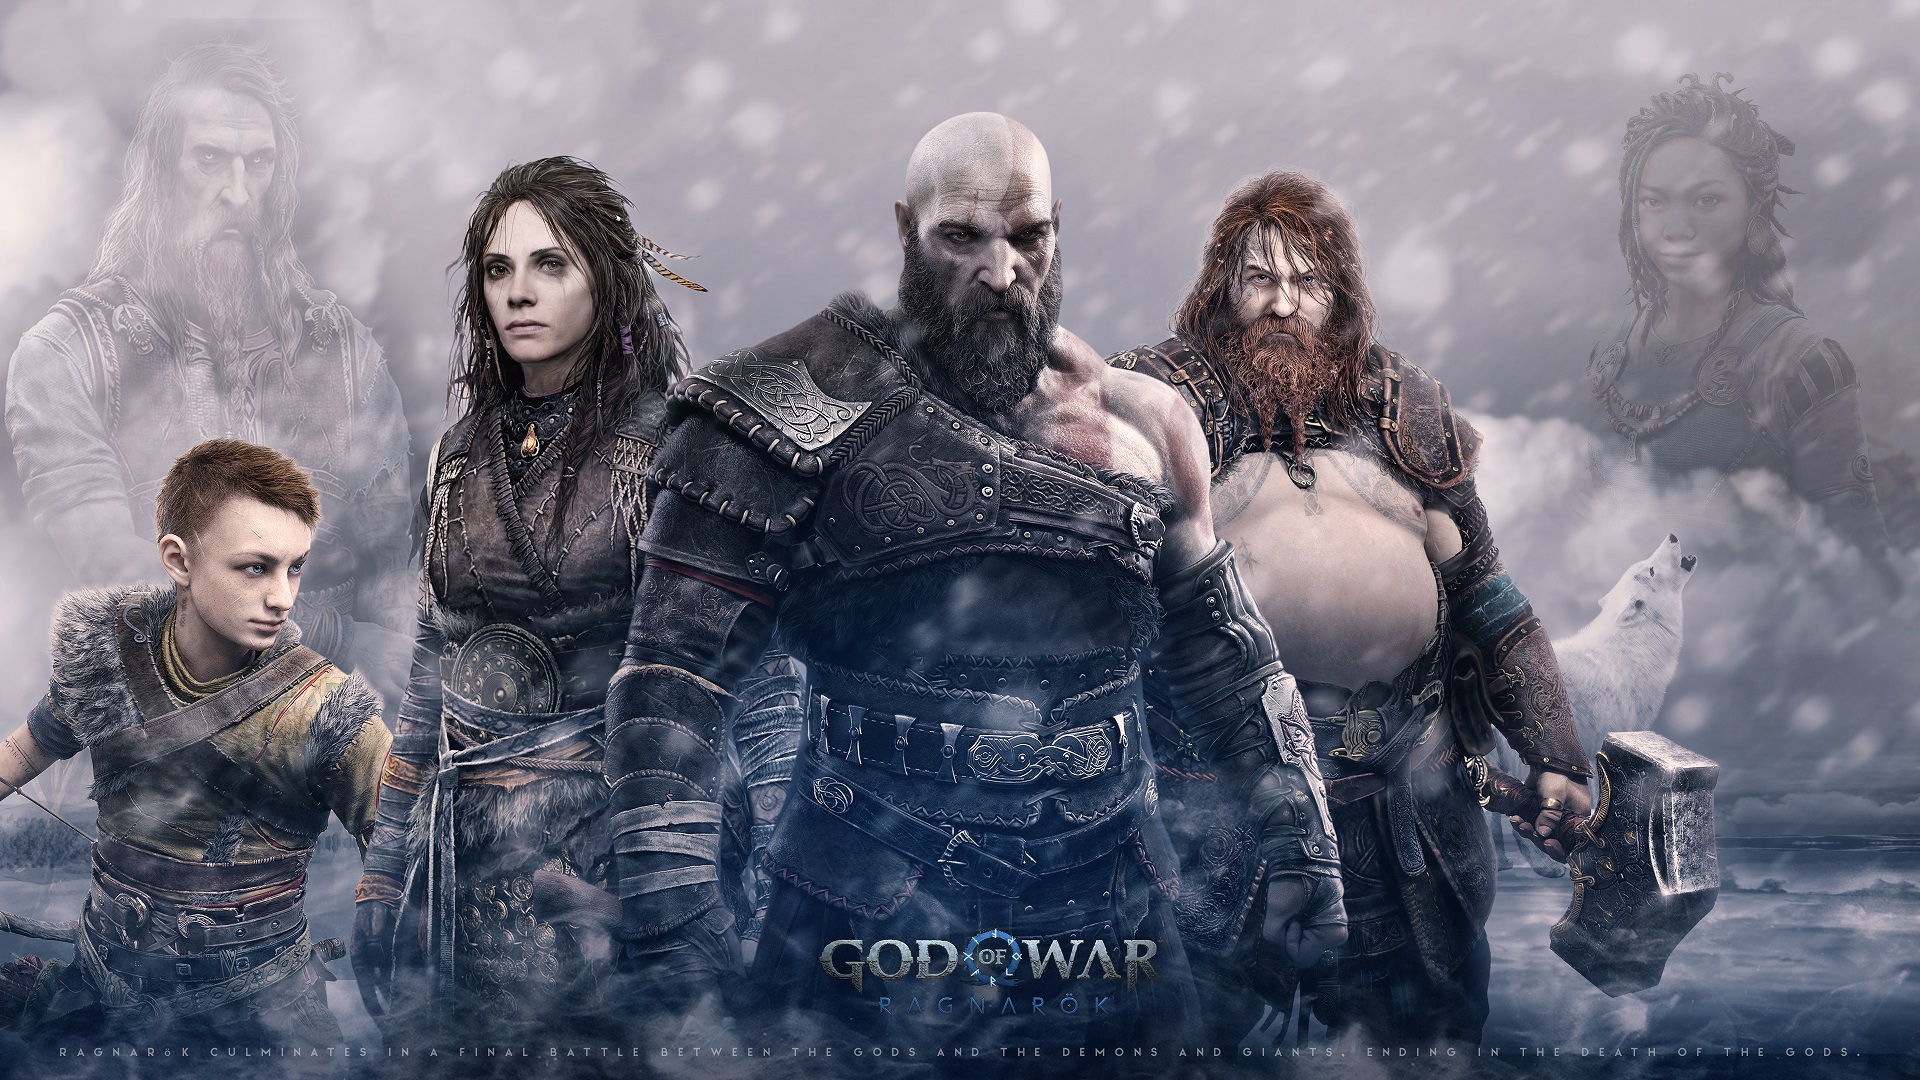 Постер для записи в блоге - Обзор на God of War: Ragnarök